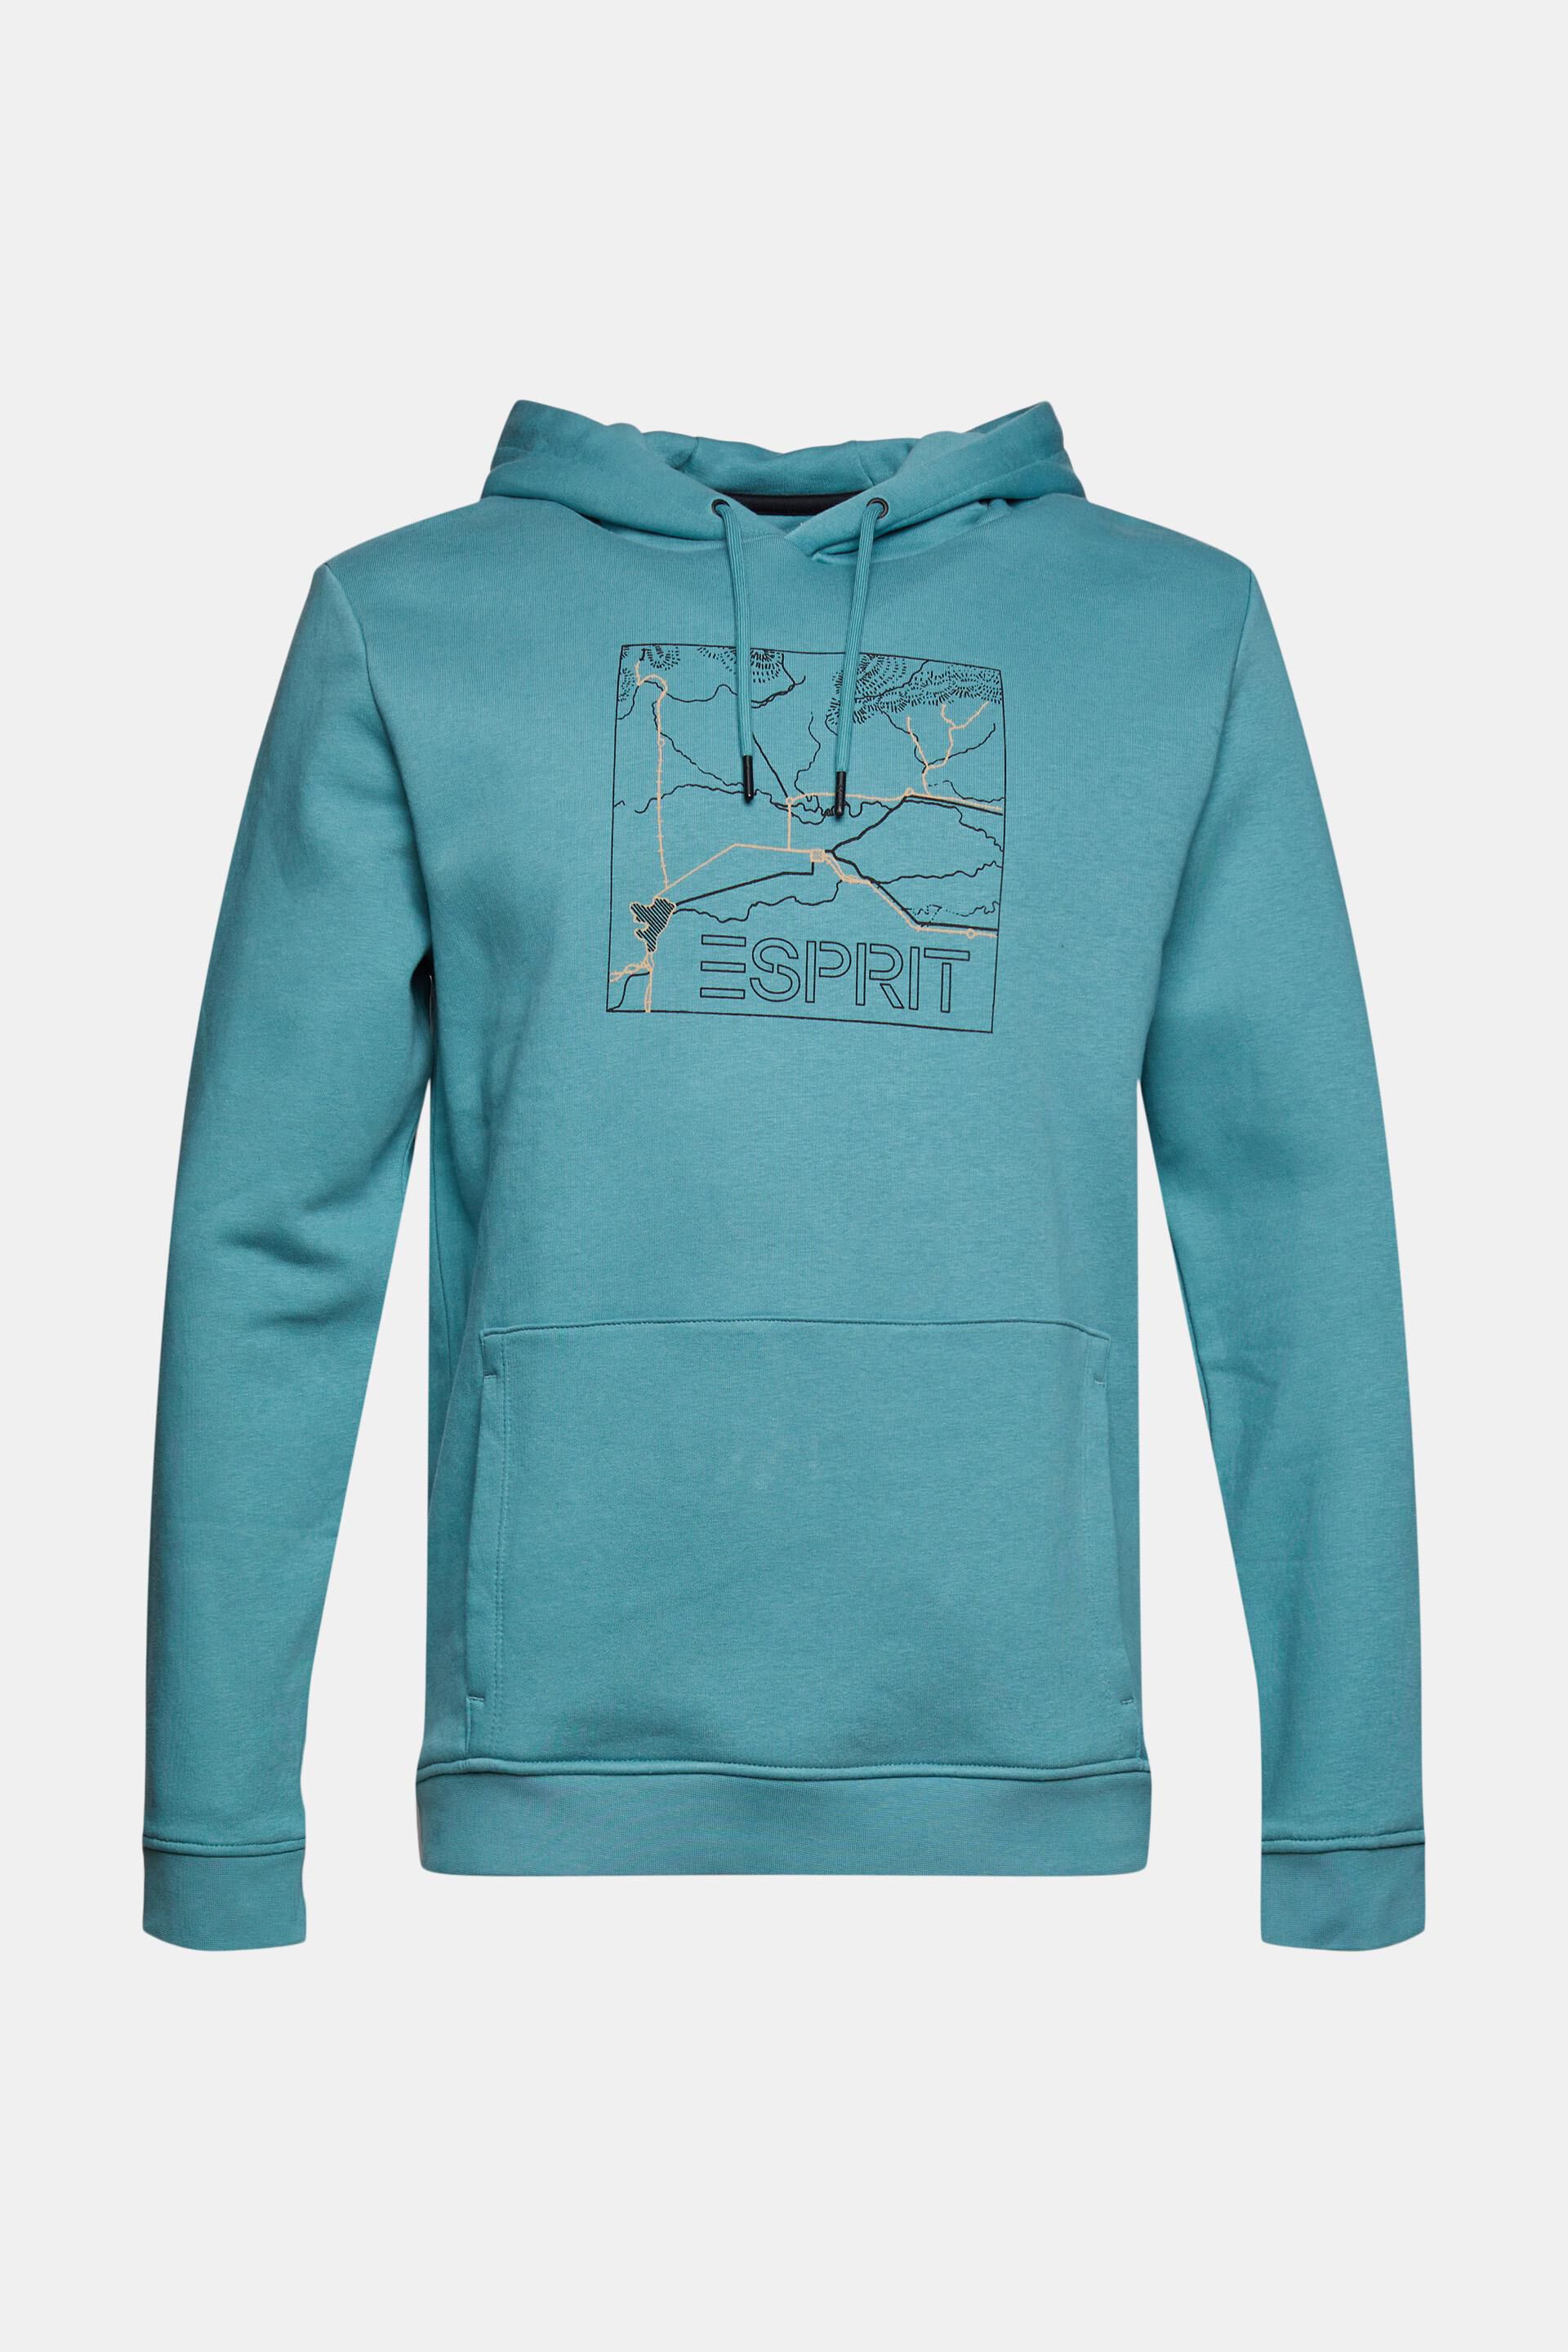 Esprit Sweatshirt-Hoodie Aufdruck Aus recyceltem mit Material: